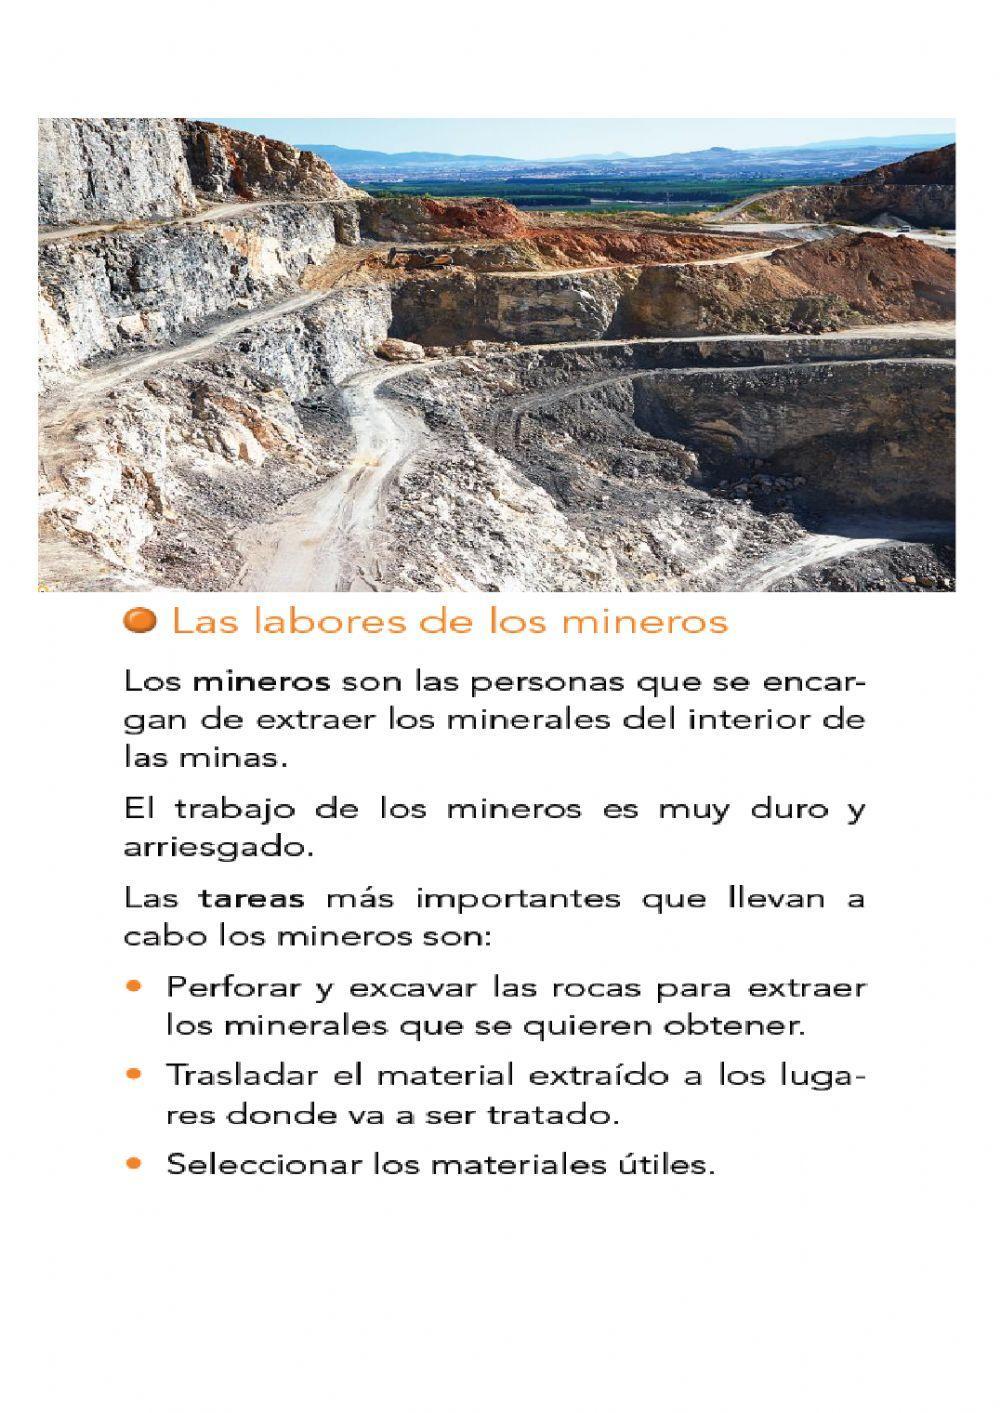 La minería